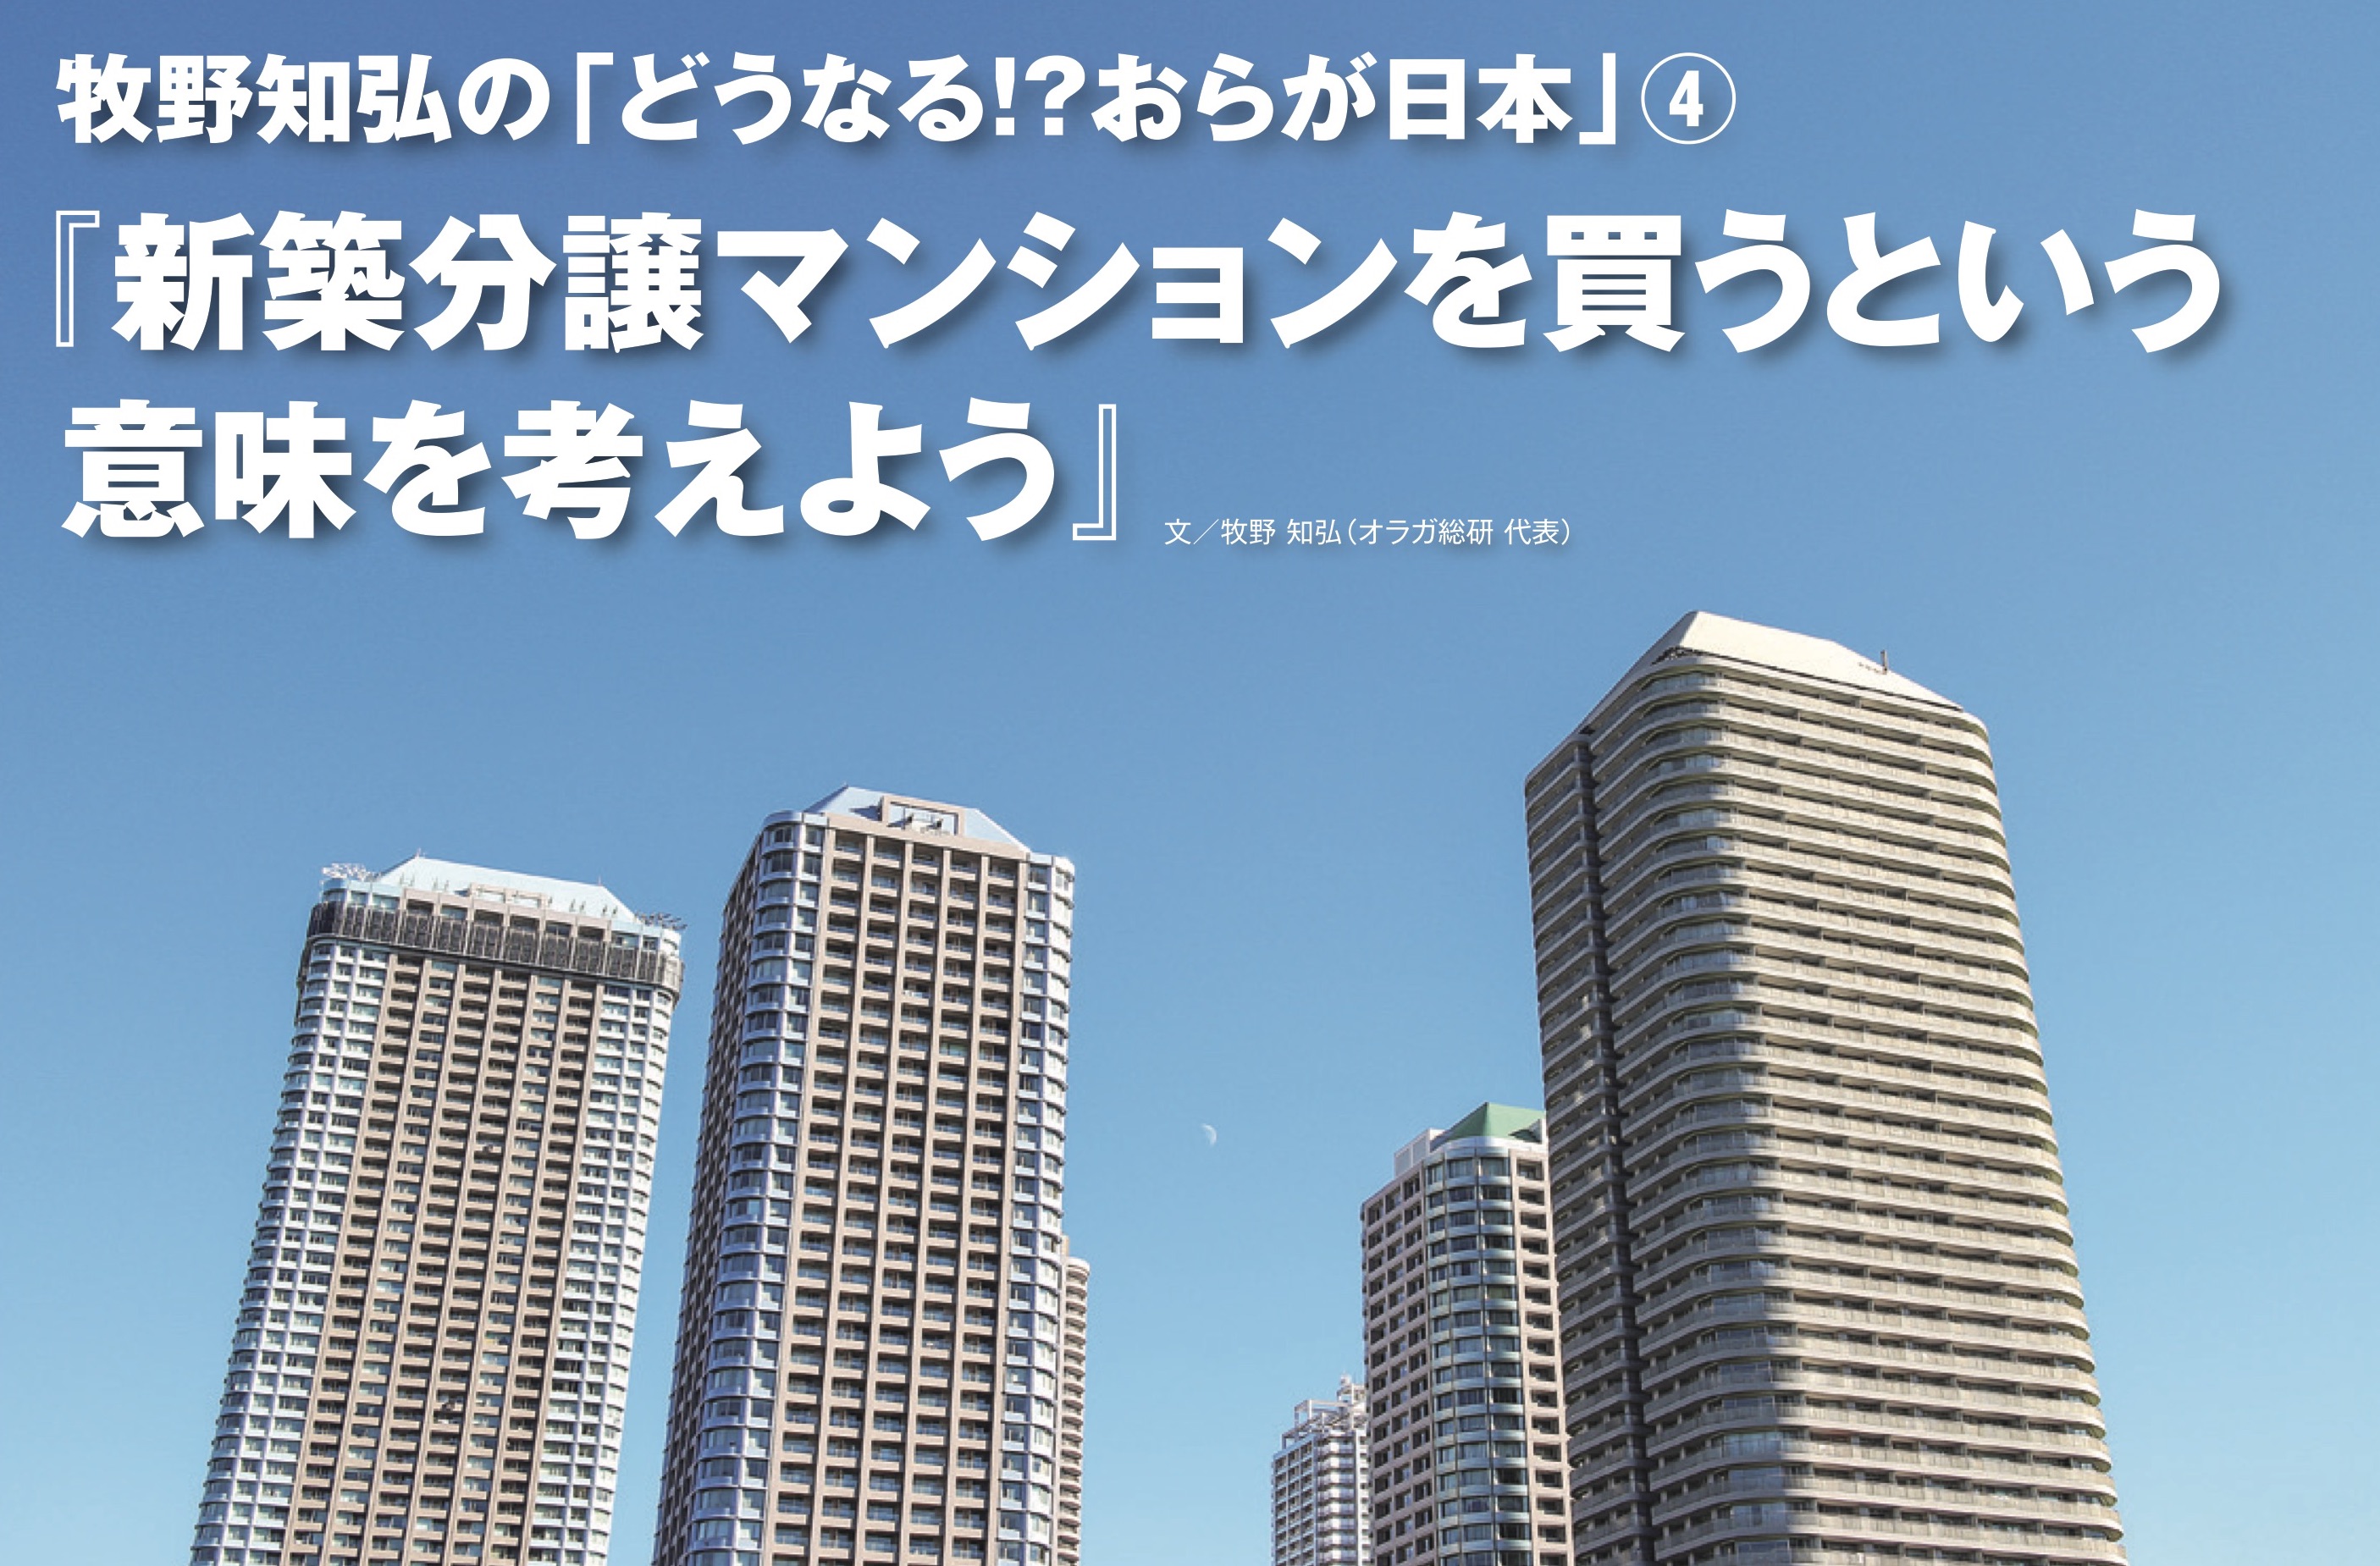 牧野知弘の どうなる おらが日本 4 新築分譲マンションを買うという意味を考えよう ウチコミ タイムズ 仲介手数料無料ウチコミ